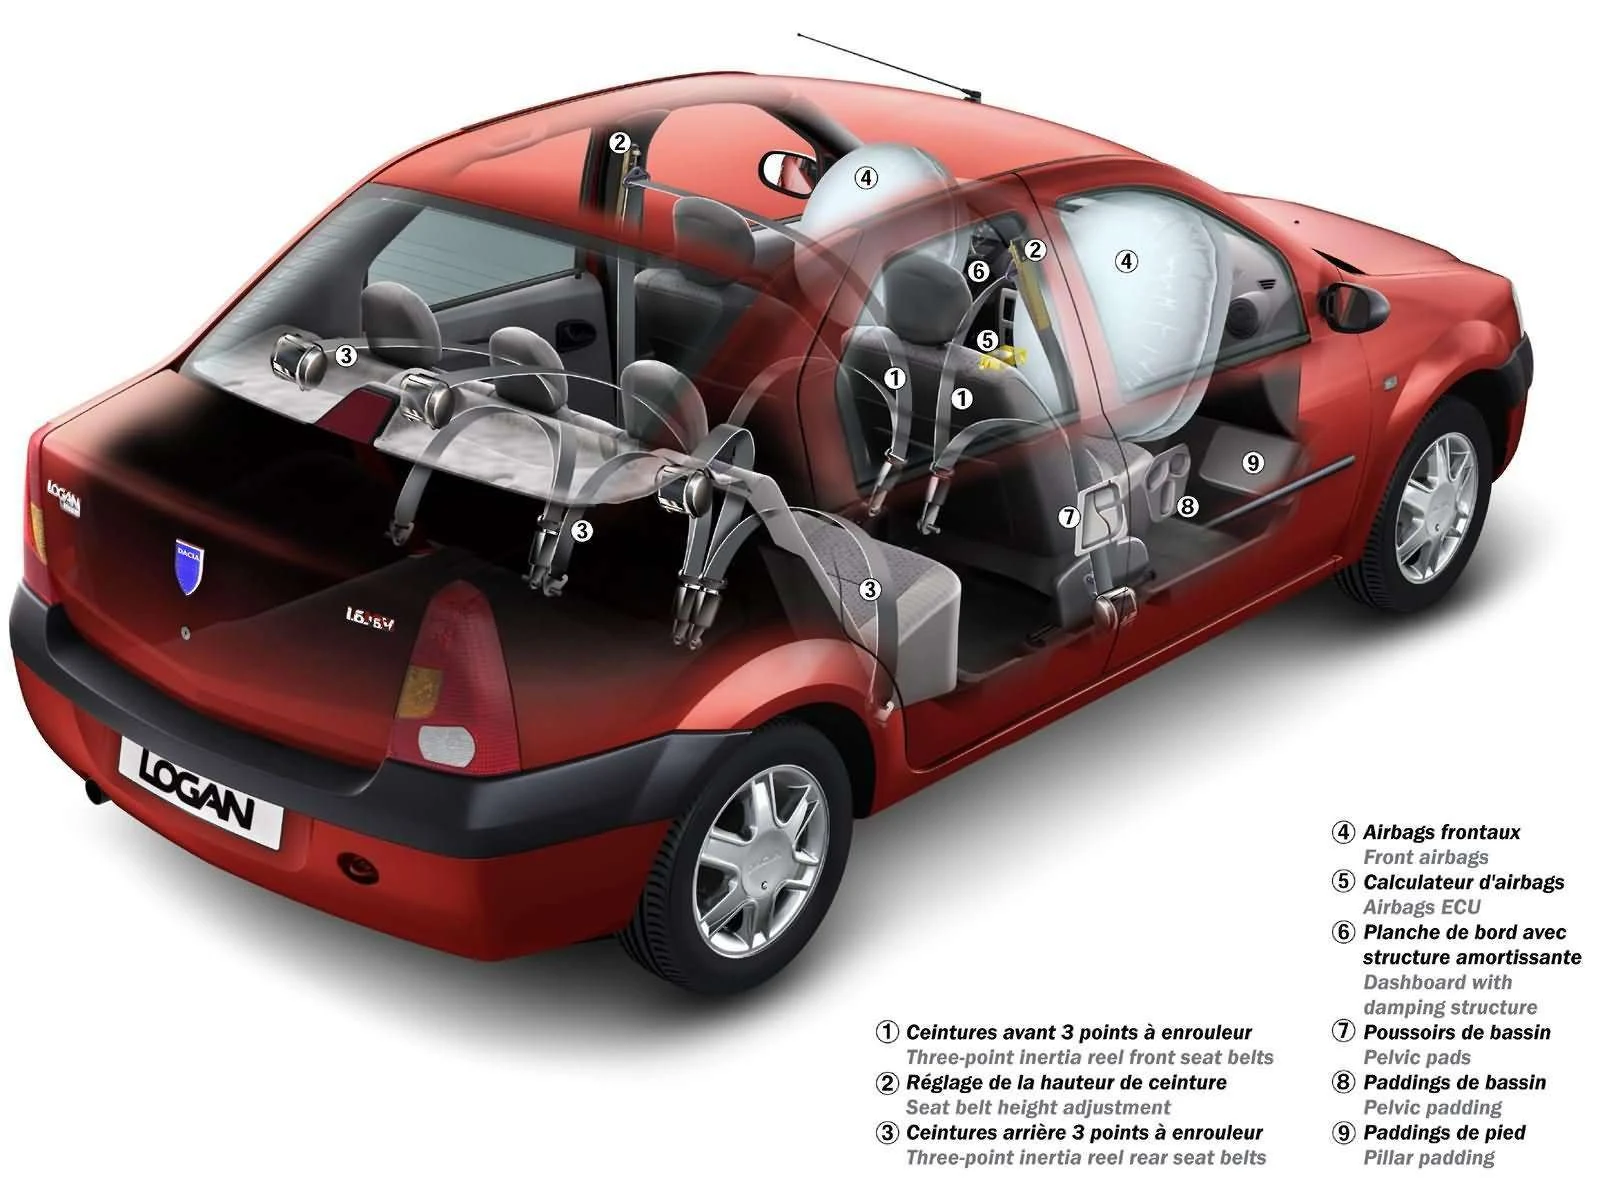 Hình ảnh xe ô tô Dacia Logan 1.6 MPI 2005 & nội ngoại thất